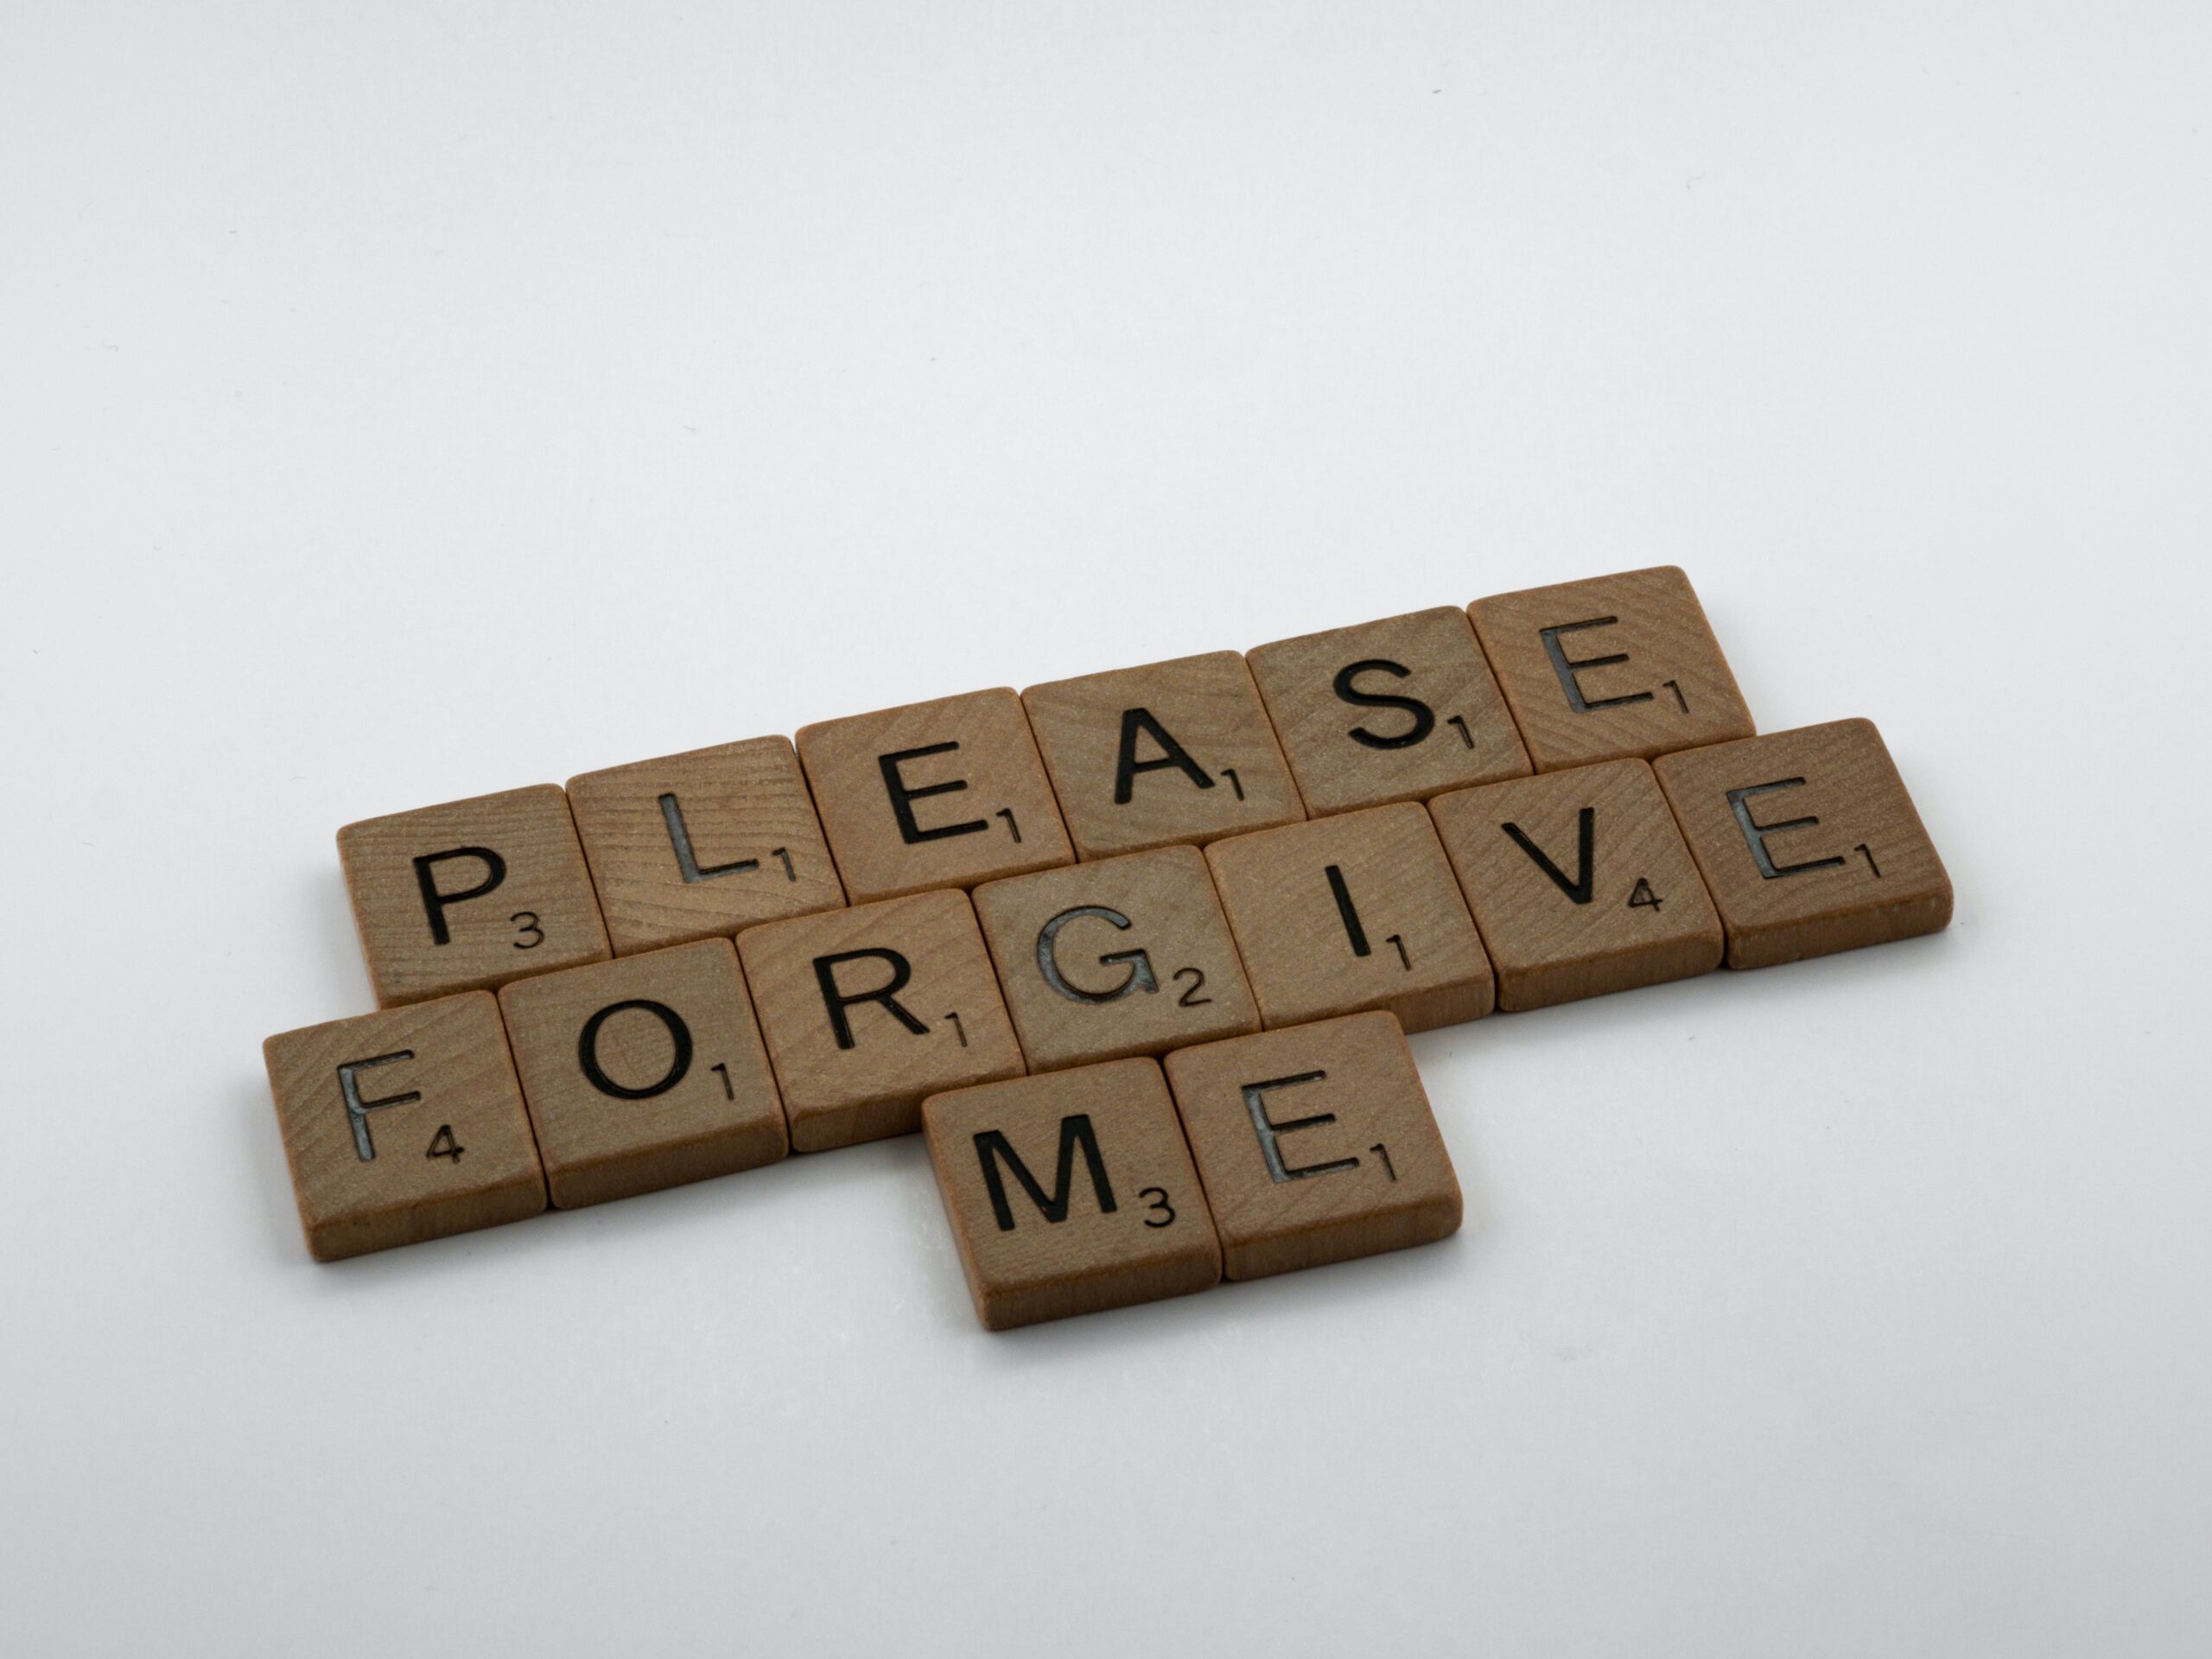 Scrabble tiles that read "Please forgive me."